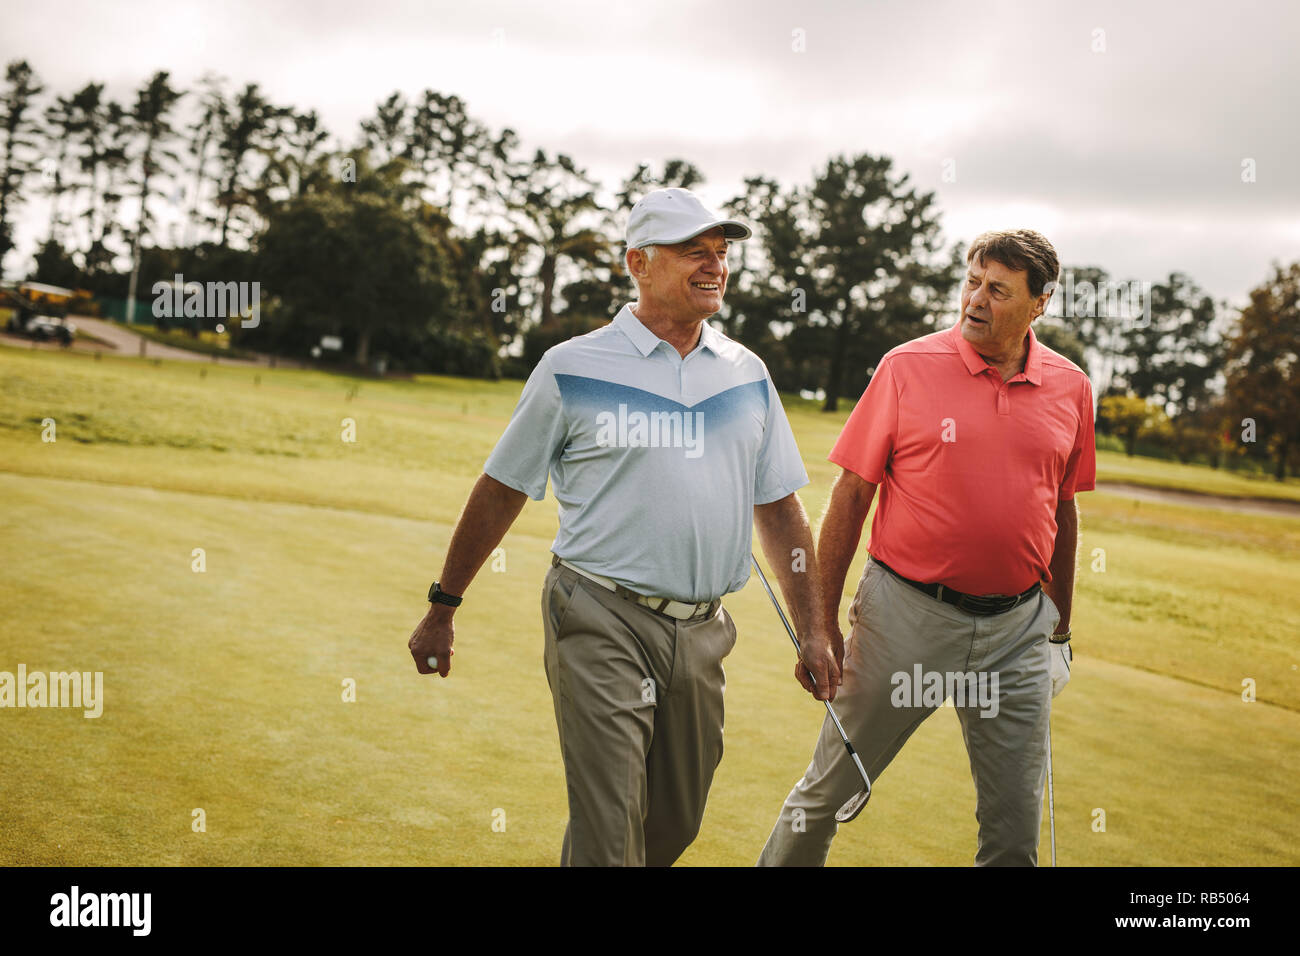 Zwei ältere Mann spielt Golf sind zu Fuß zum nächsten Loch. Professionelle Golfspieler zu Fuß und auf dem Golfplatz. Stockfoto